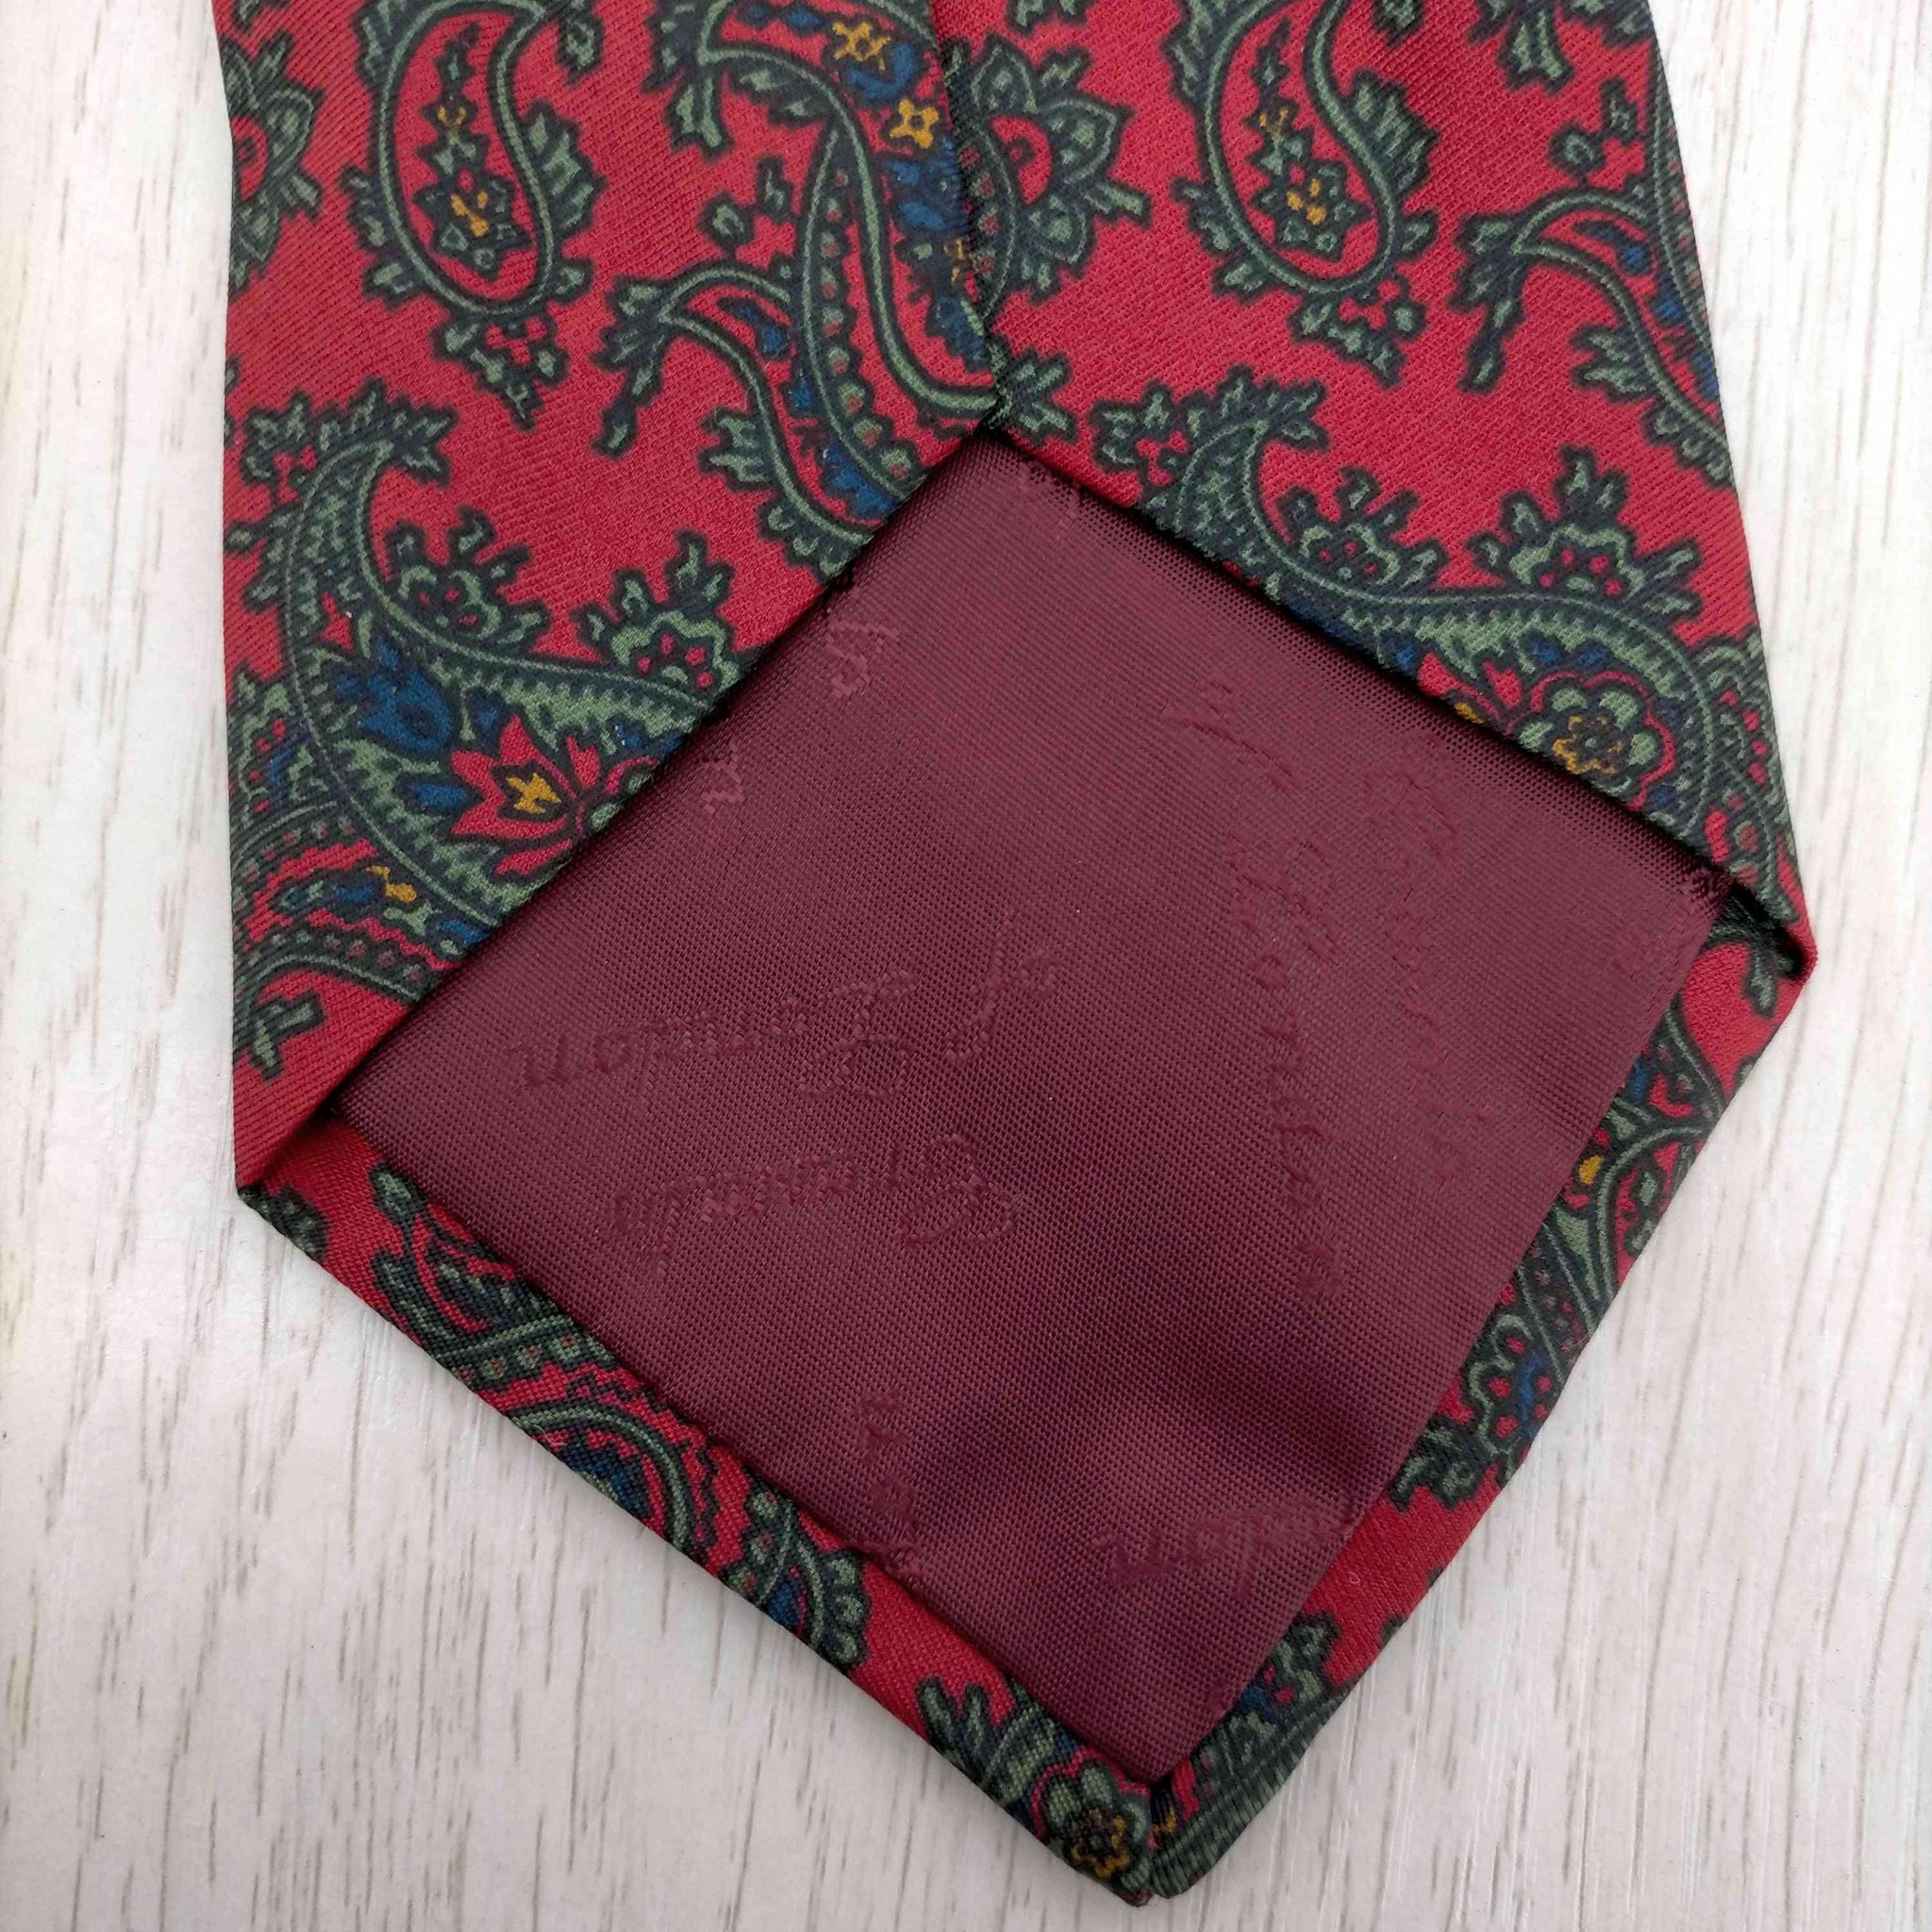 papas(パパス)Cravats of London イングランド製 ネクタイ ペイズリー